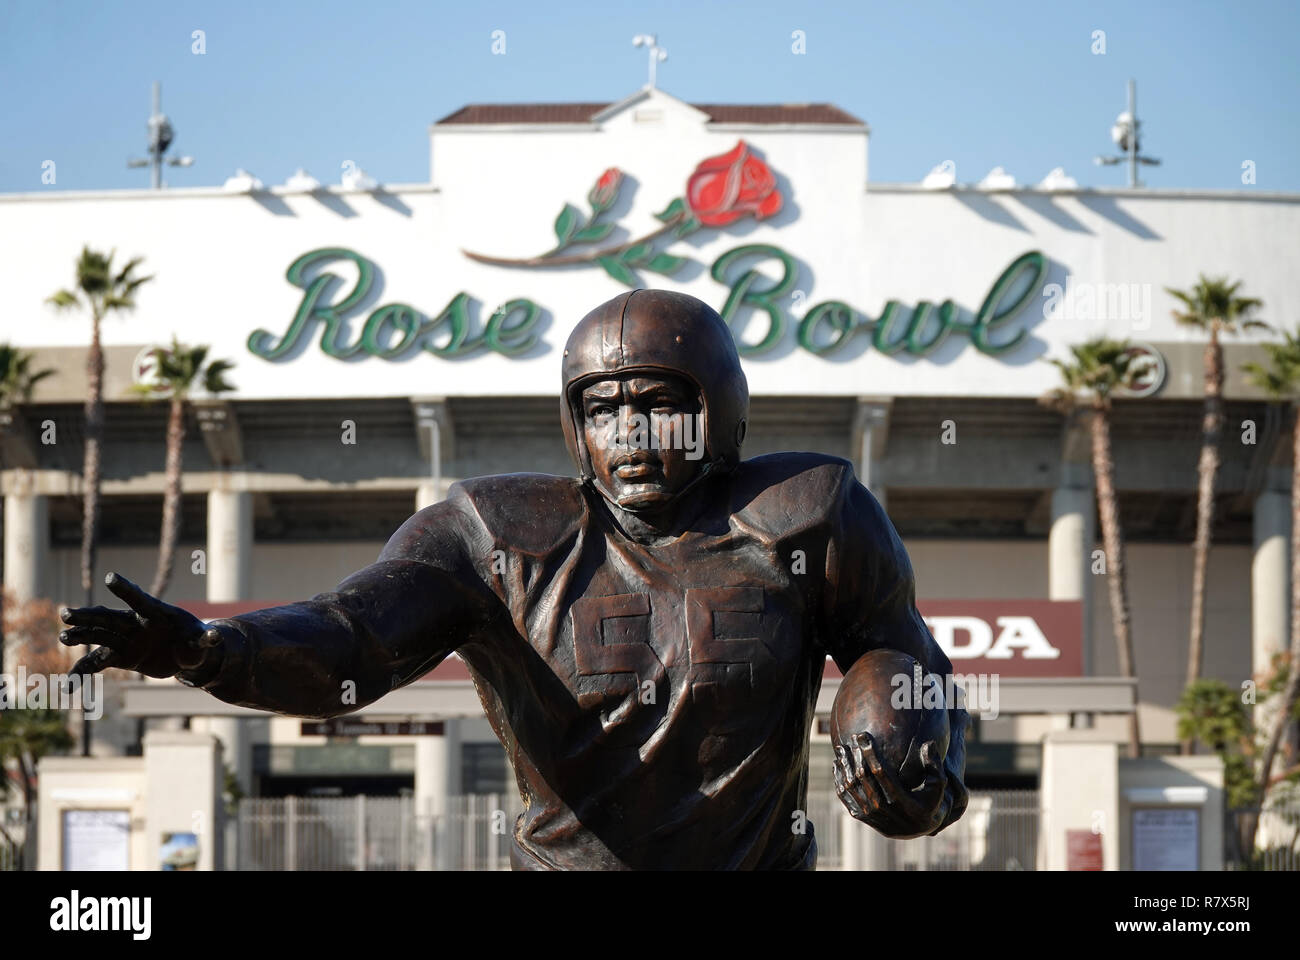 Pasadena, CA/USA - Feb.17, 2018: eine Statue der Farbe Sperre brechen Athlet, Jackie Robinson, ist außerhalb der historischen Rose Bowl Stadion gezeigt. Stockfoto